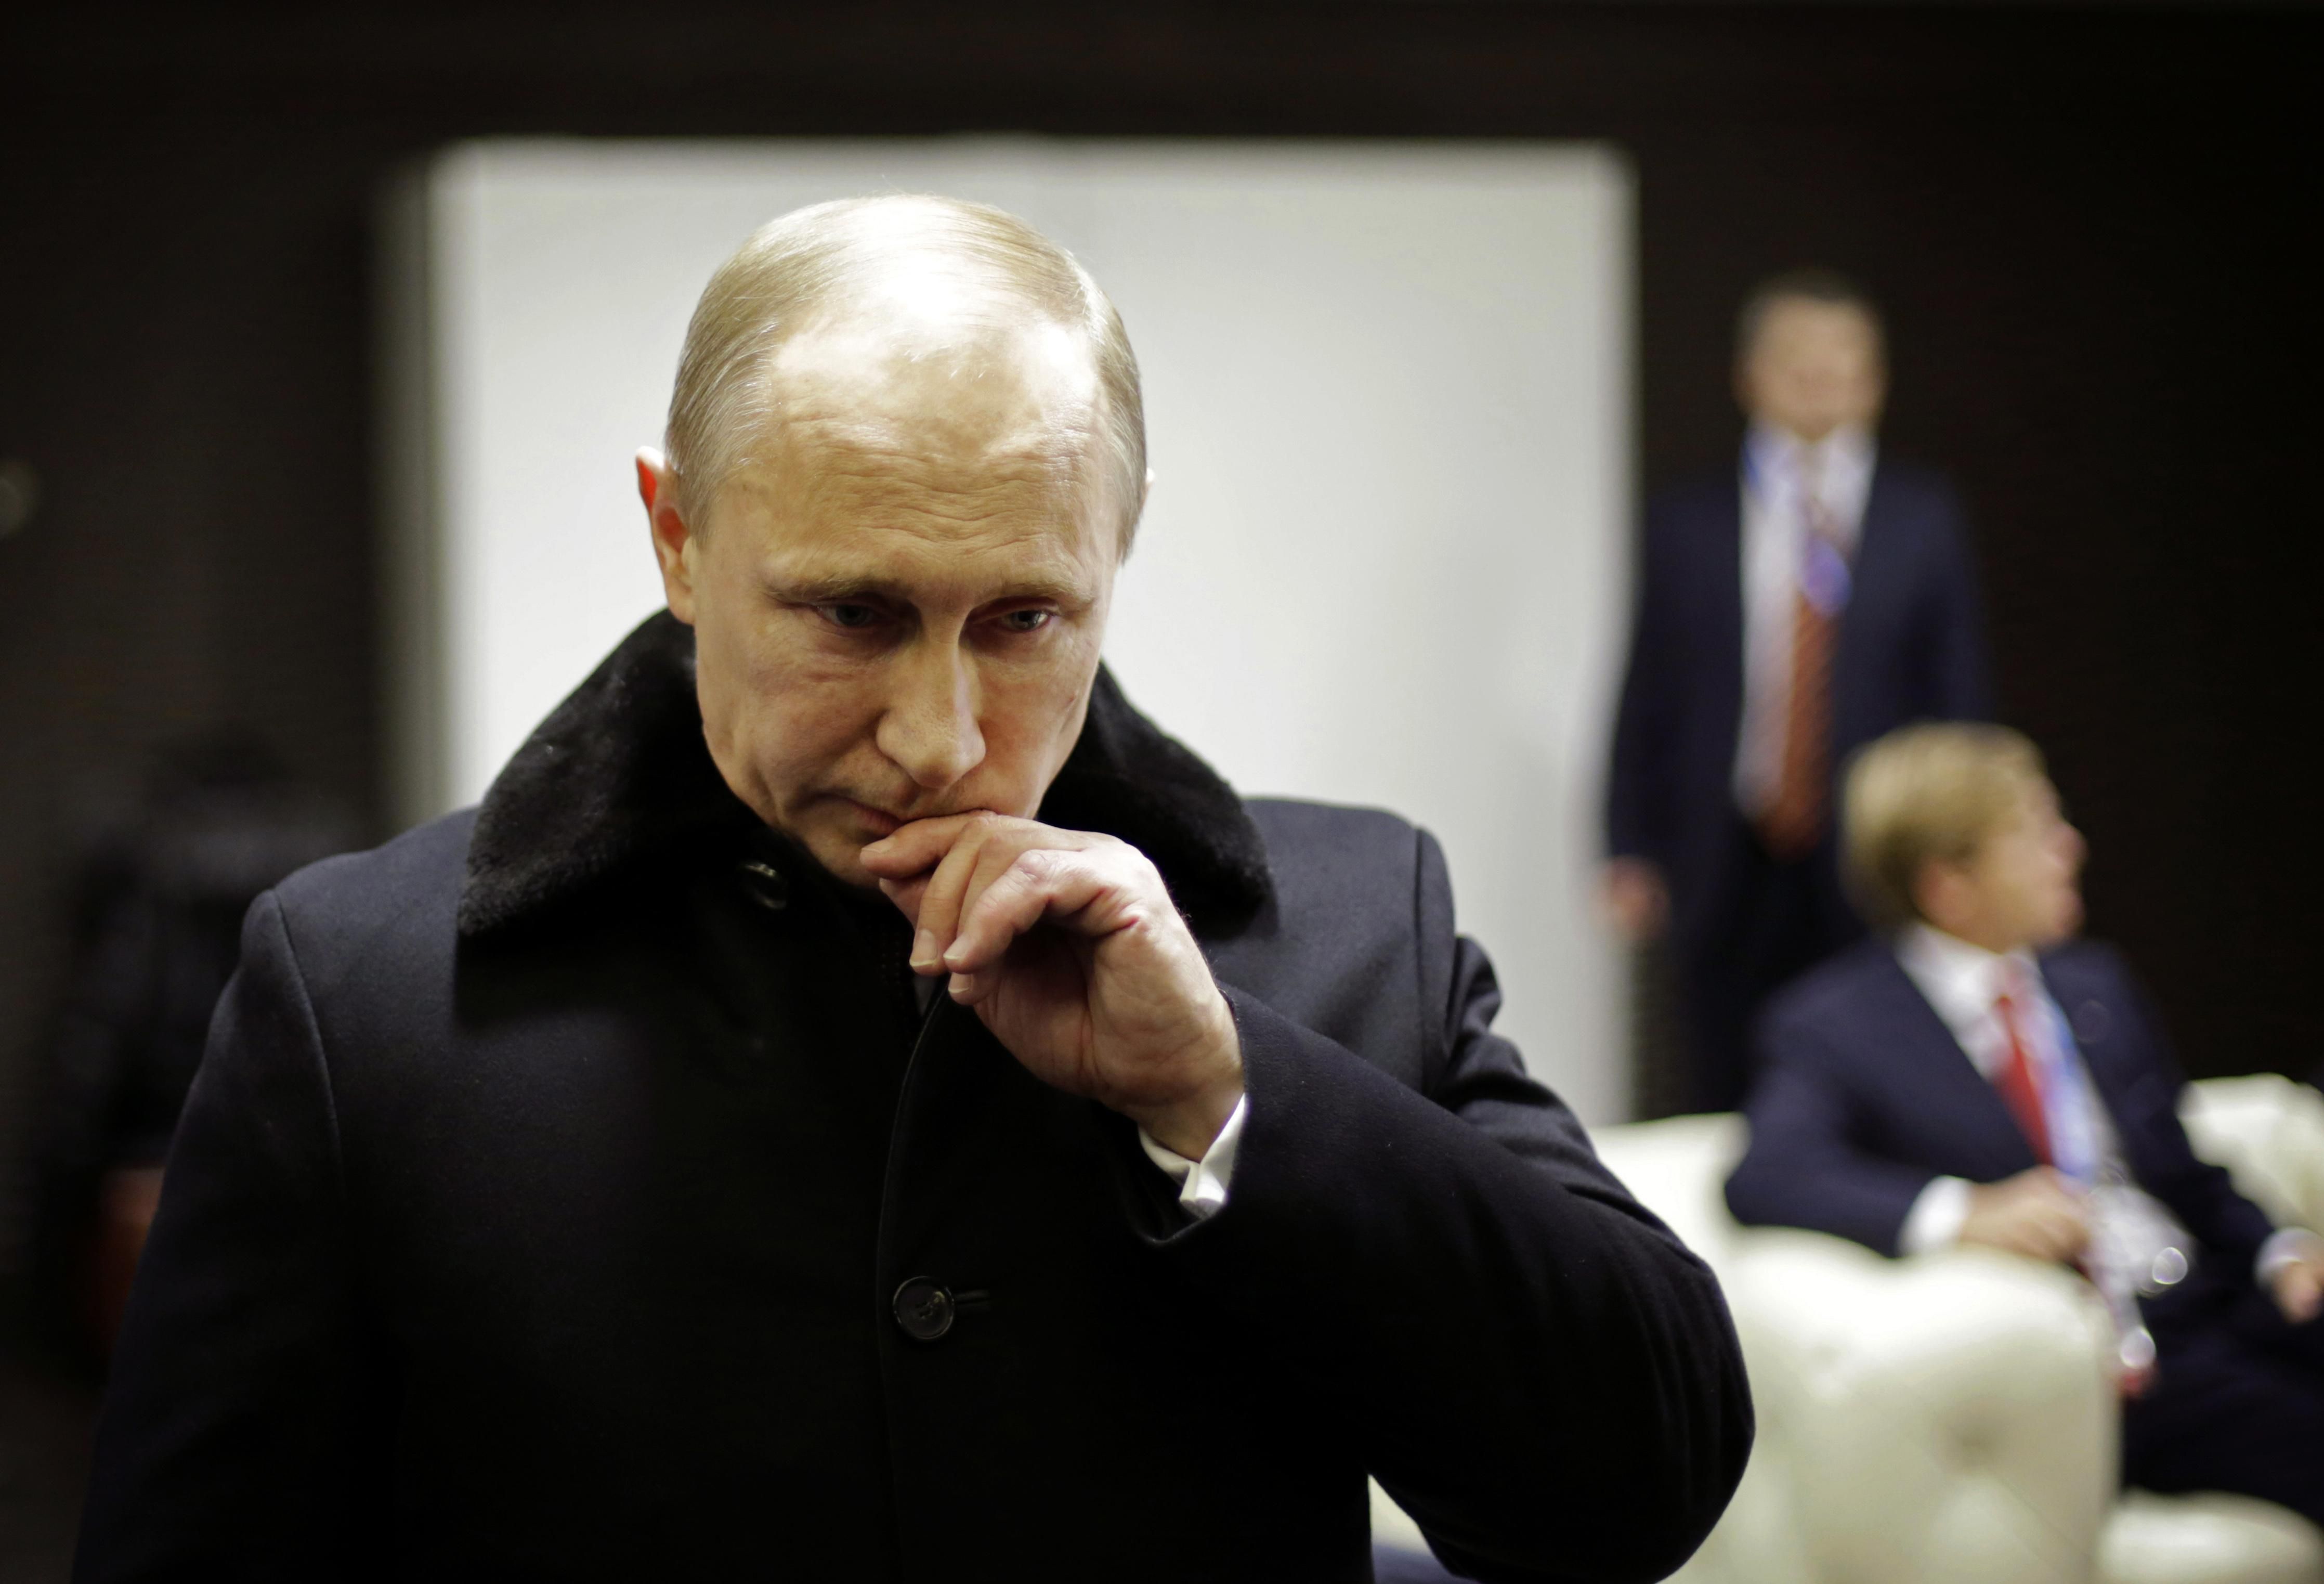 "Заражается много людей": в Кремле новая вспышка коронавируса